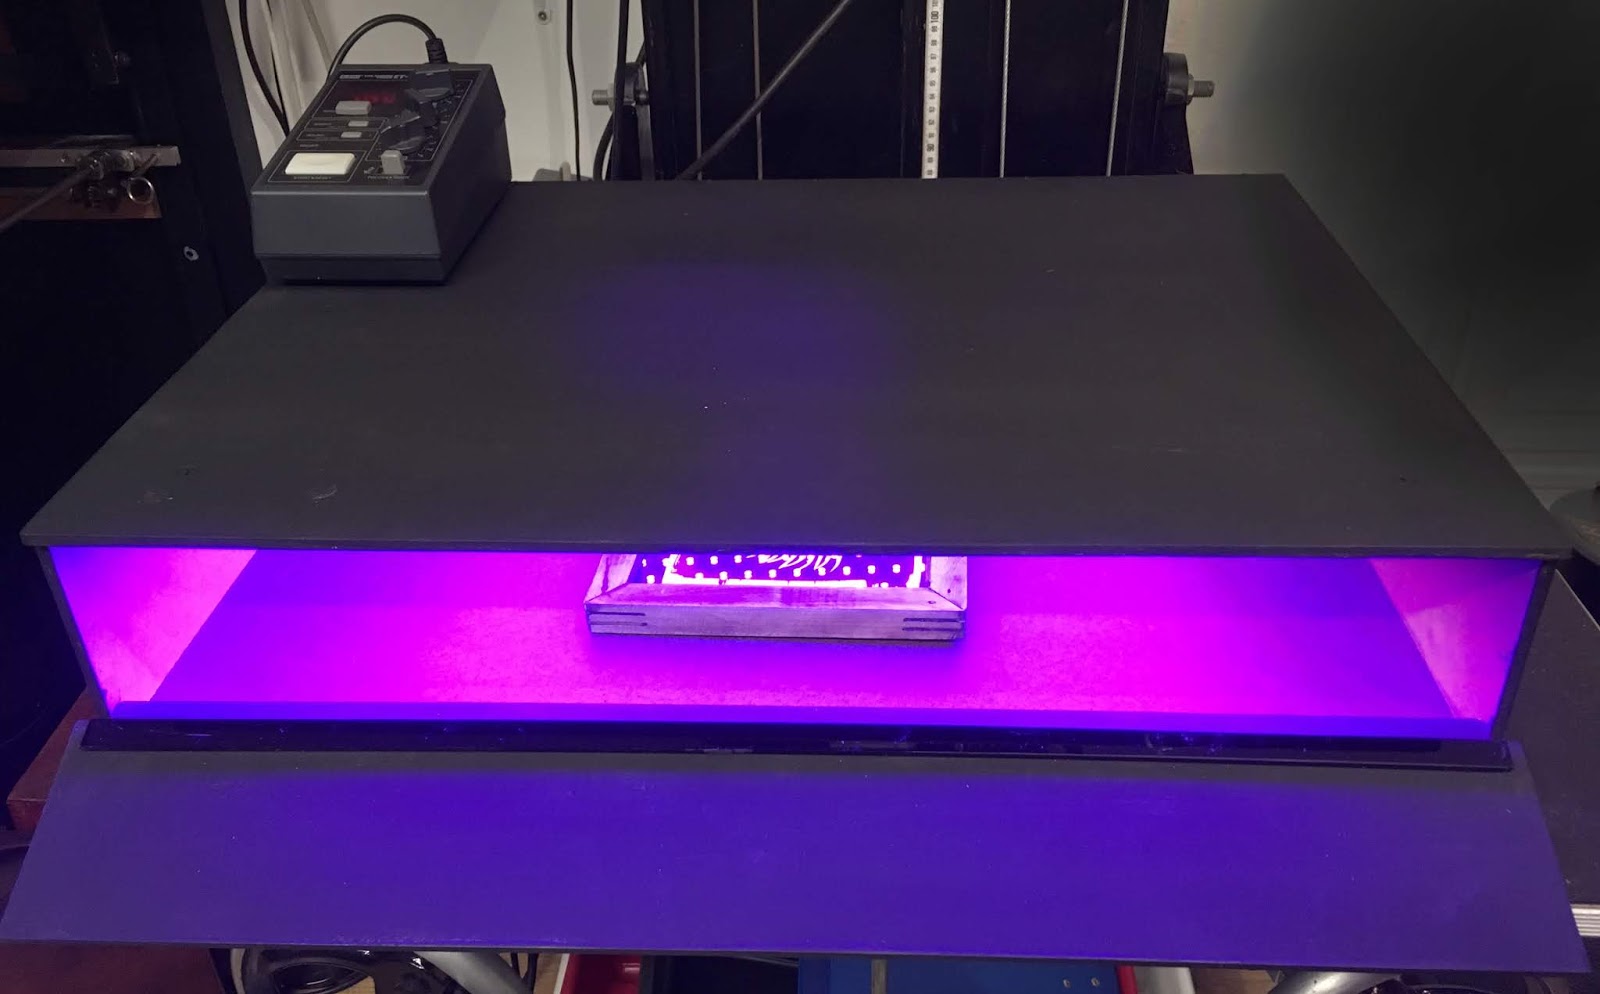 LED UV exposure box part 1, the box